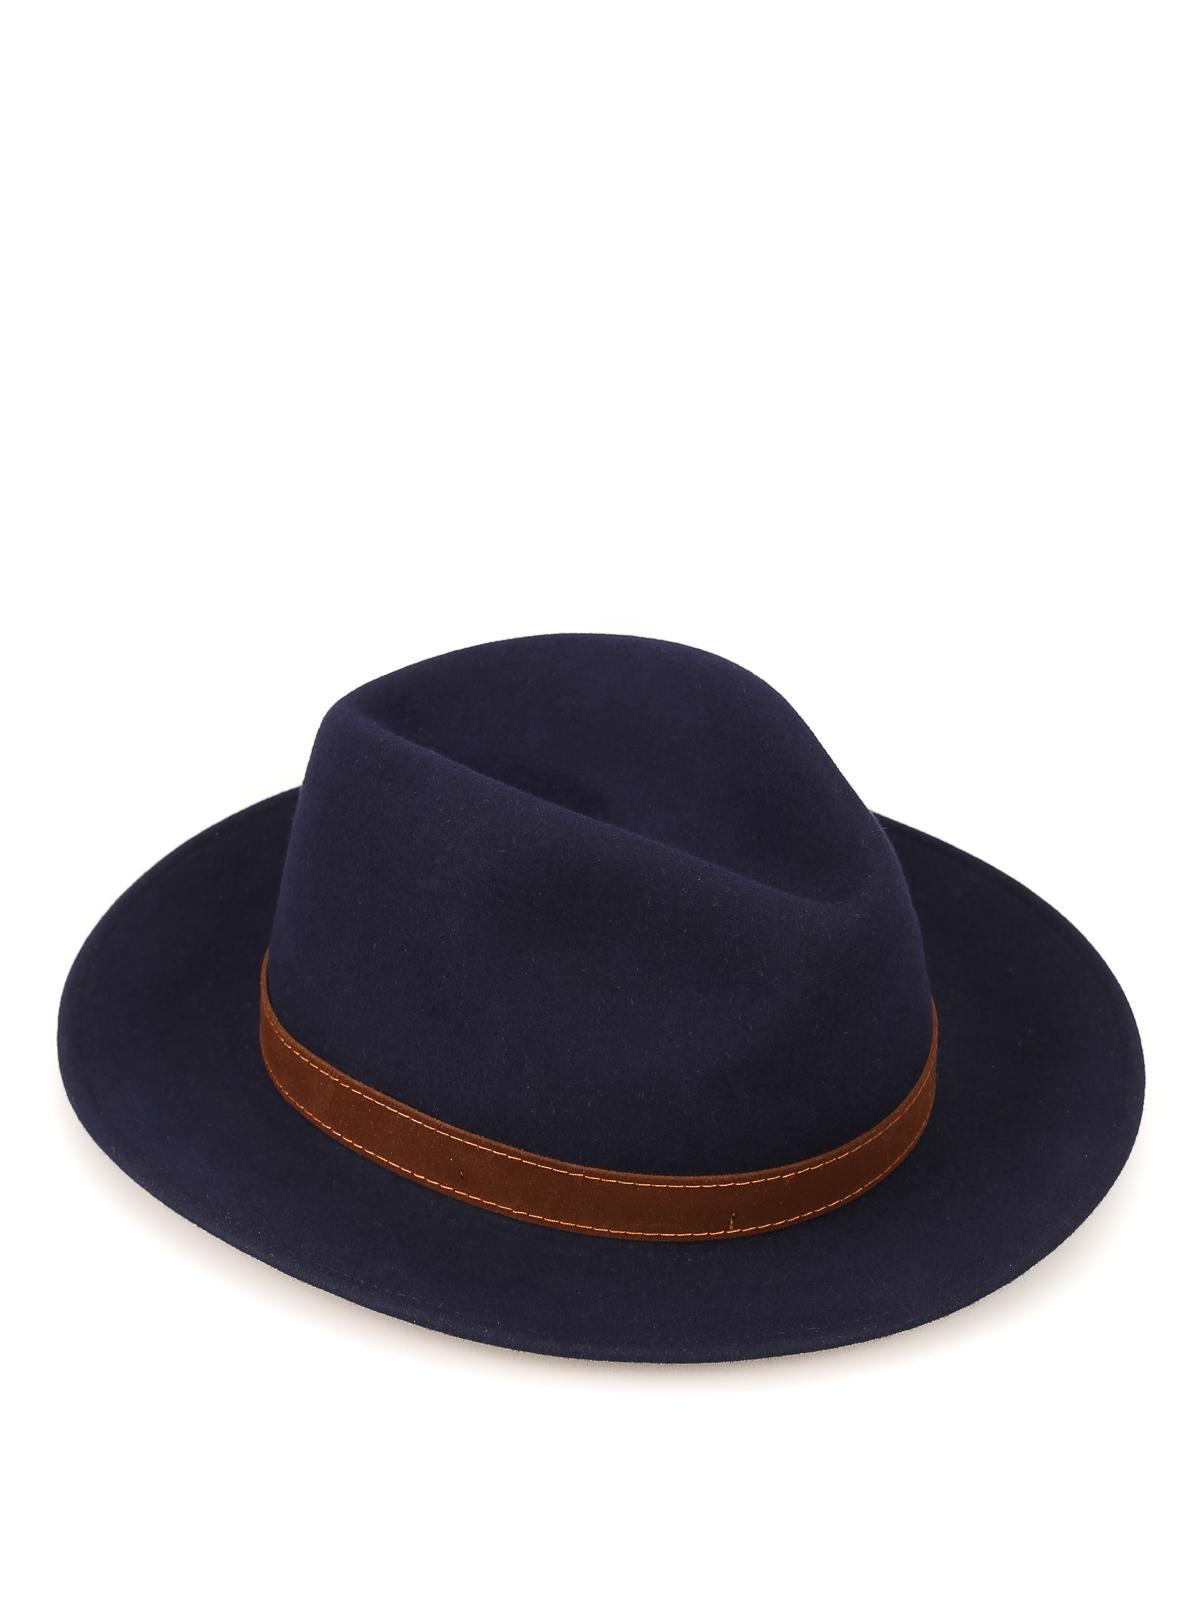 Borsalino Alessandria Blue Felt Hat for Men - Lyst